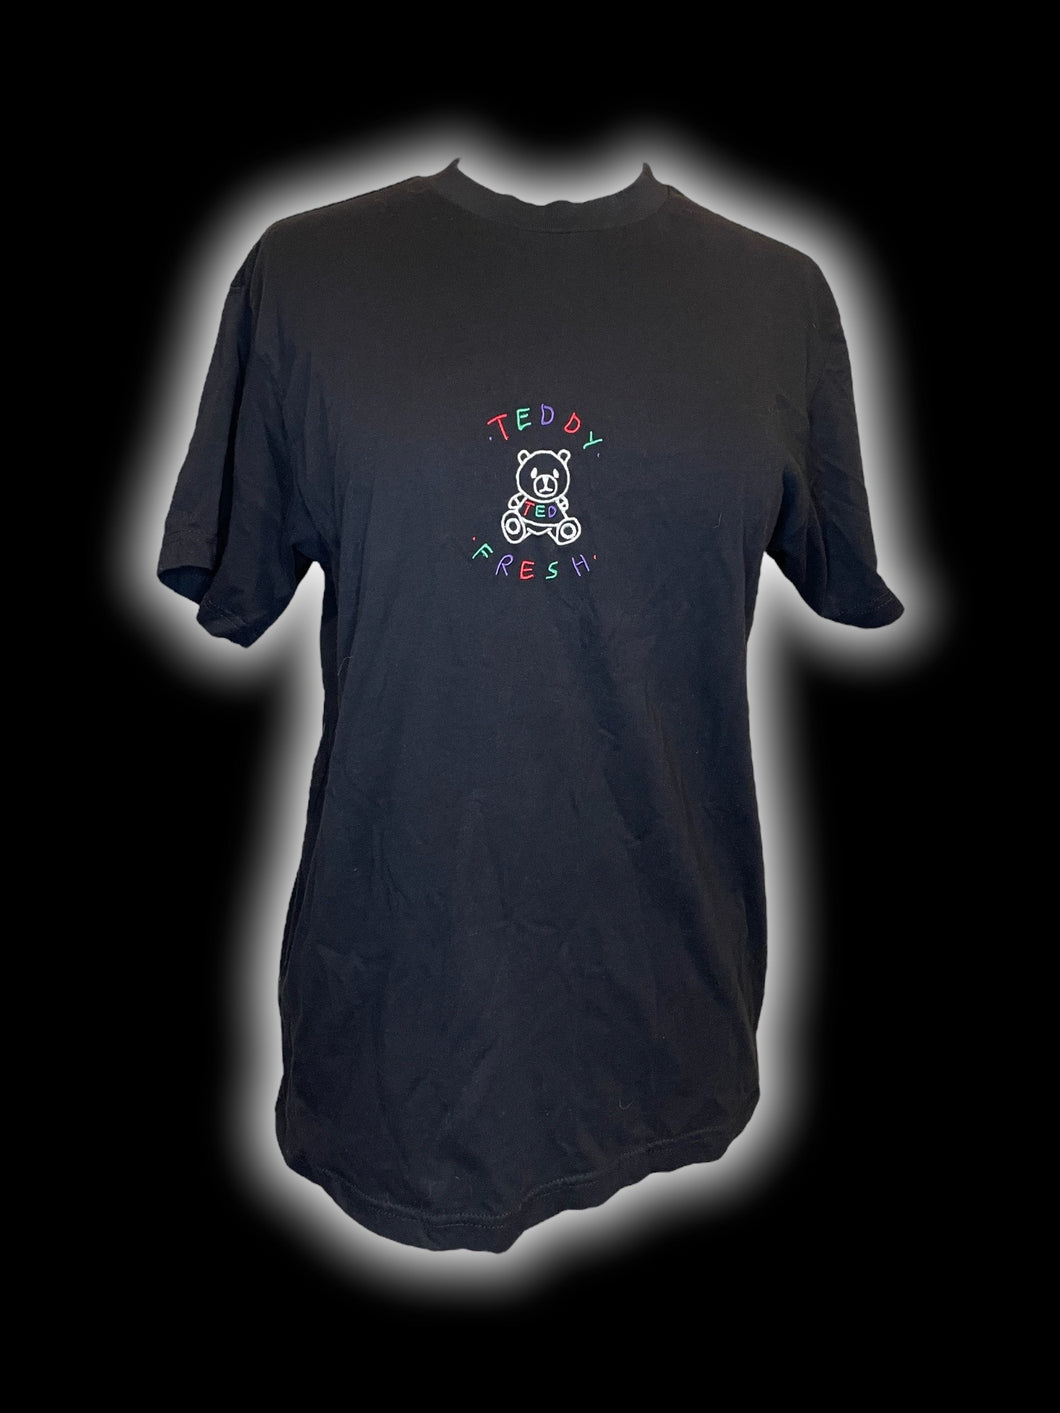 XL Black & multicolor “Teddy Fresh” logo embroidery short sleeve crew neckline top